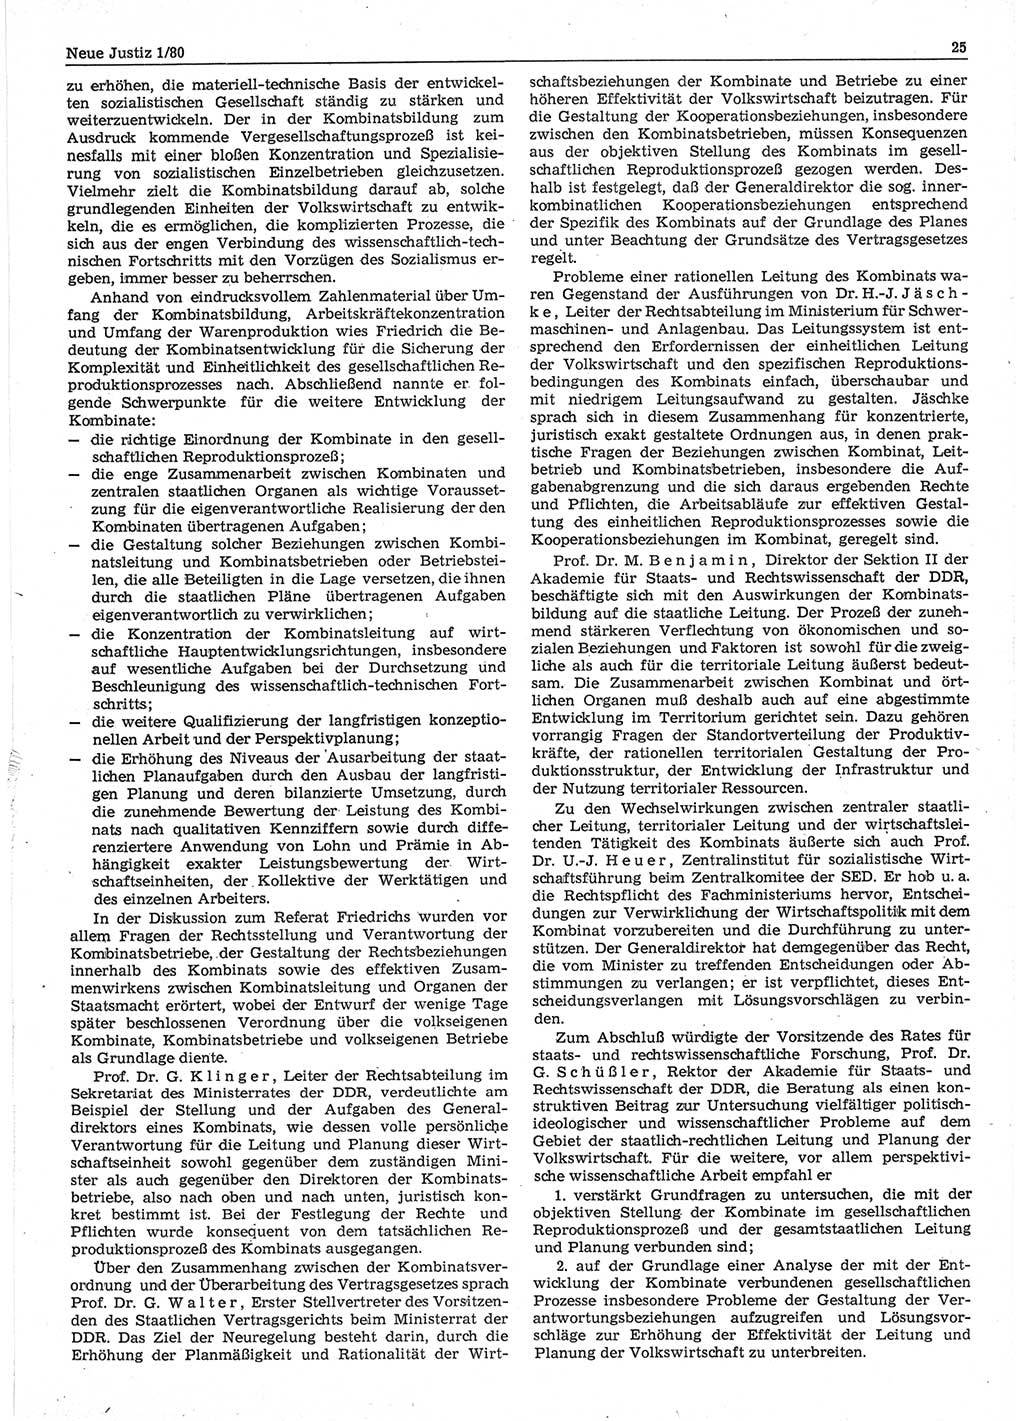 Neue Justiz (NJ), Zeitschrift für sozialistisches Recht und Gesetzlichkeit [Deutsche Demokratische Republik (DDR)], 34. Jahrgang 1980, Seite 25 (NJ DDR 1980, S. 25)